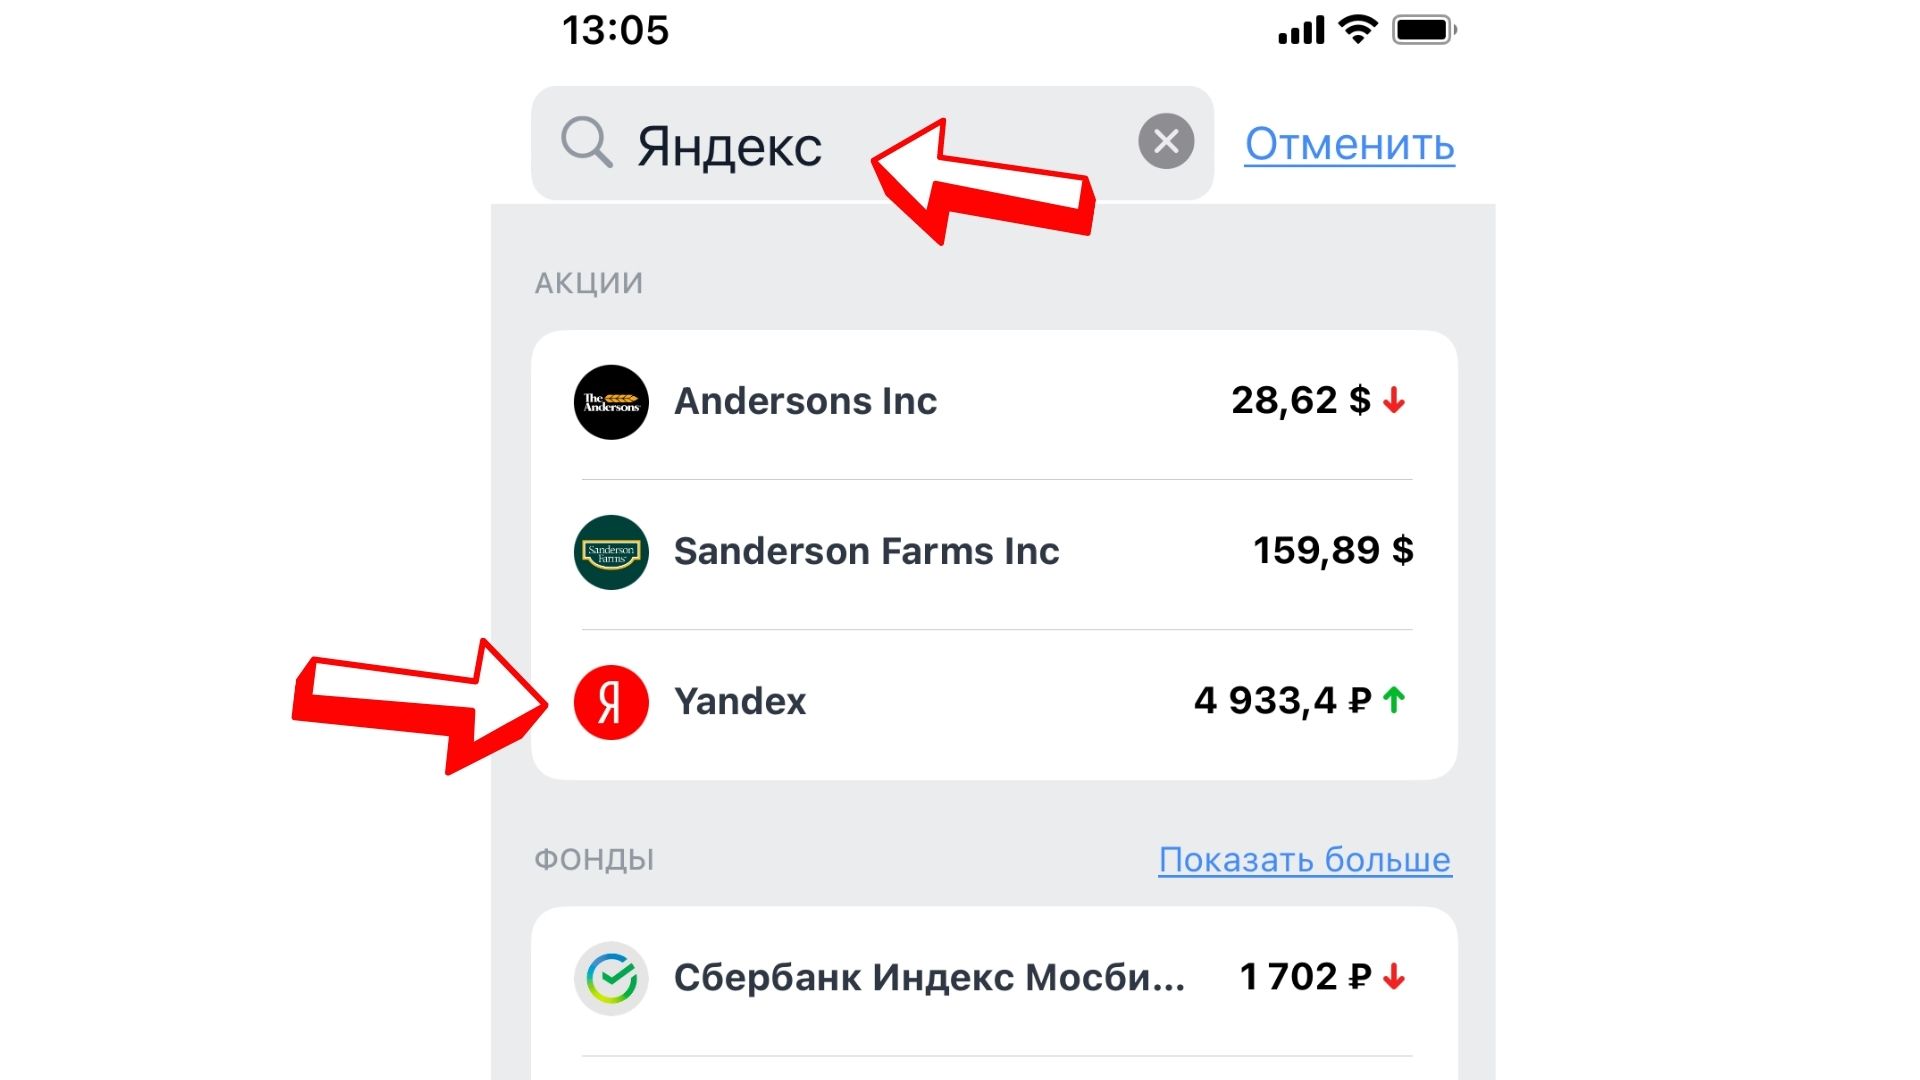 Как купить акции Яндекса физическому лицу. Инструкция подробно